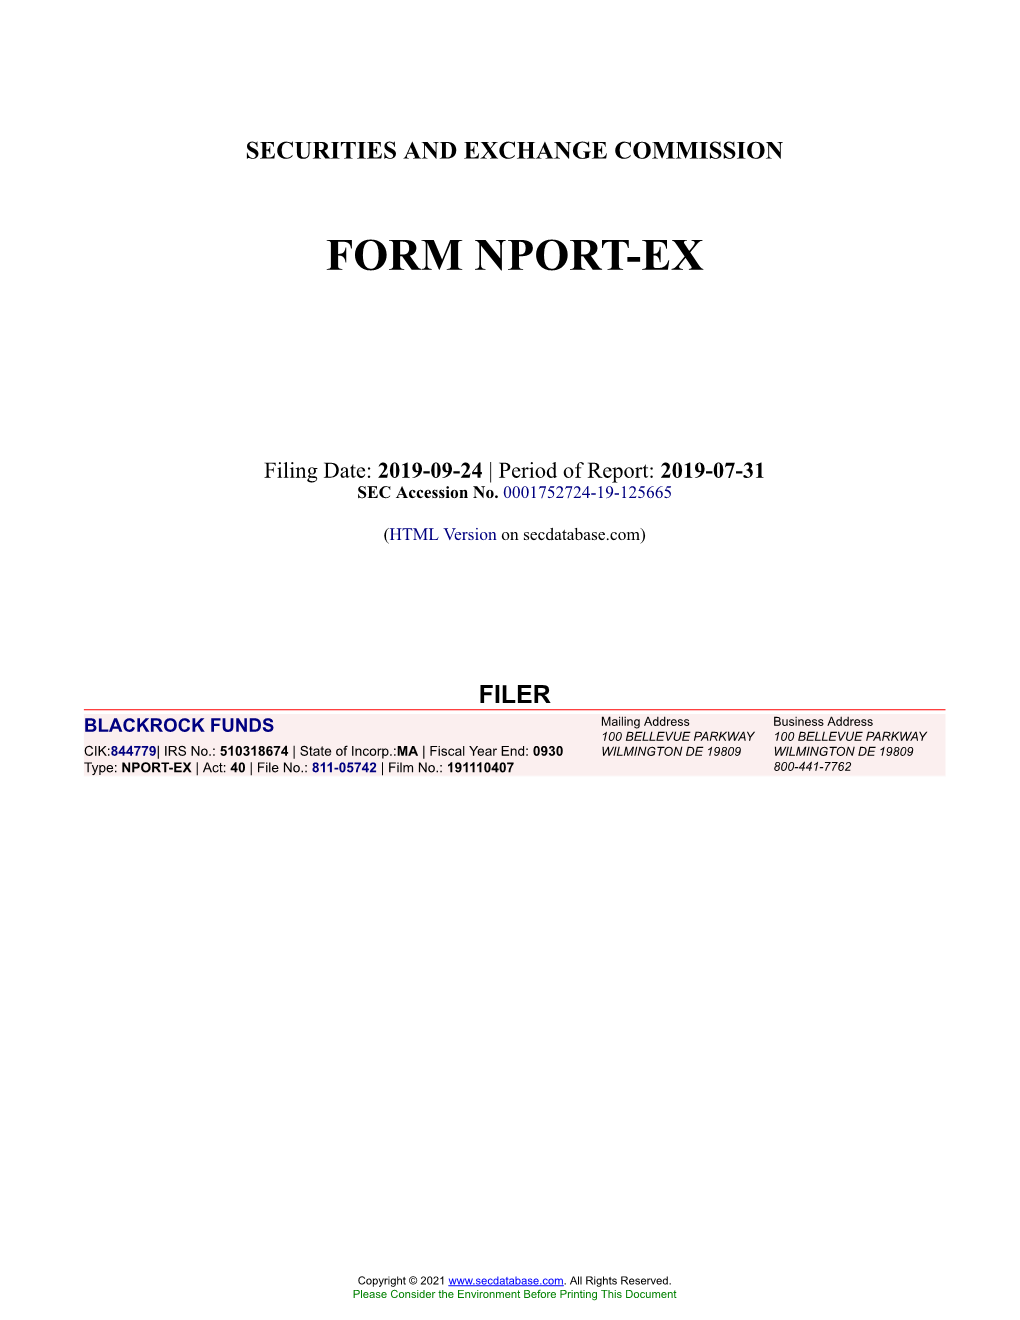 BLACKROCK FUNDS Form NPORT-EX Filed 2019-09-24